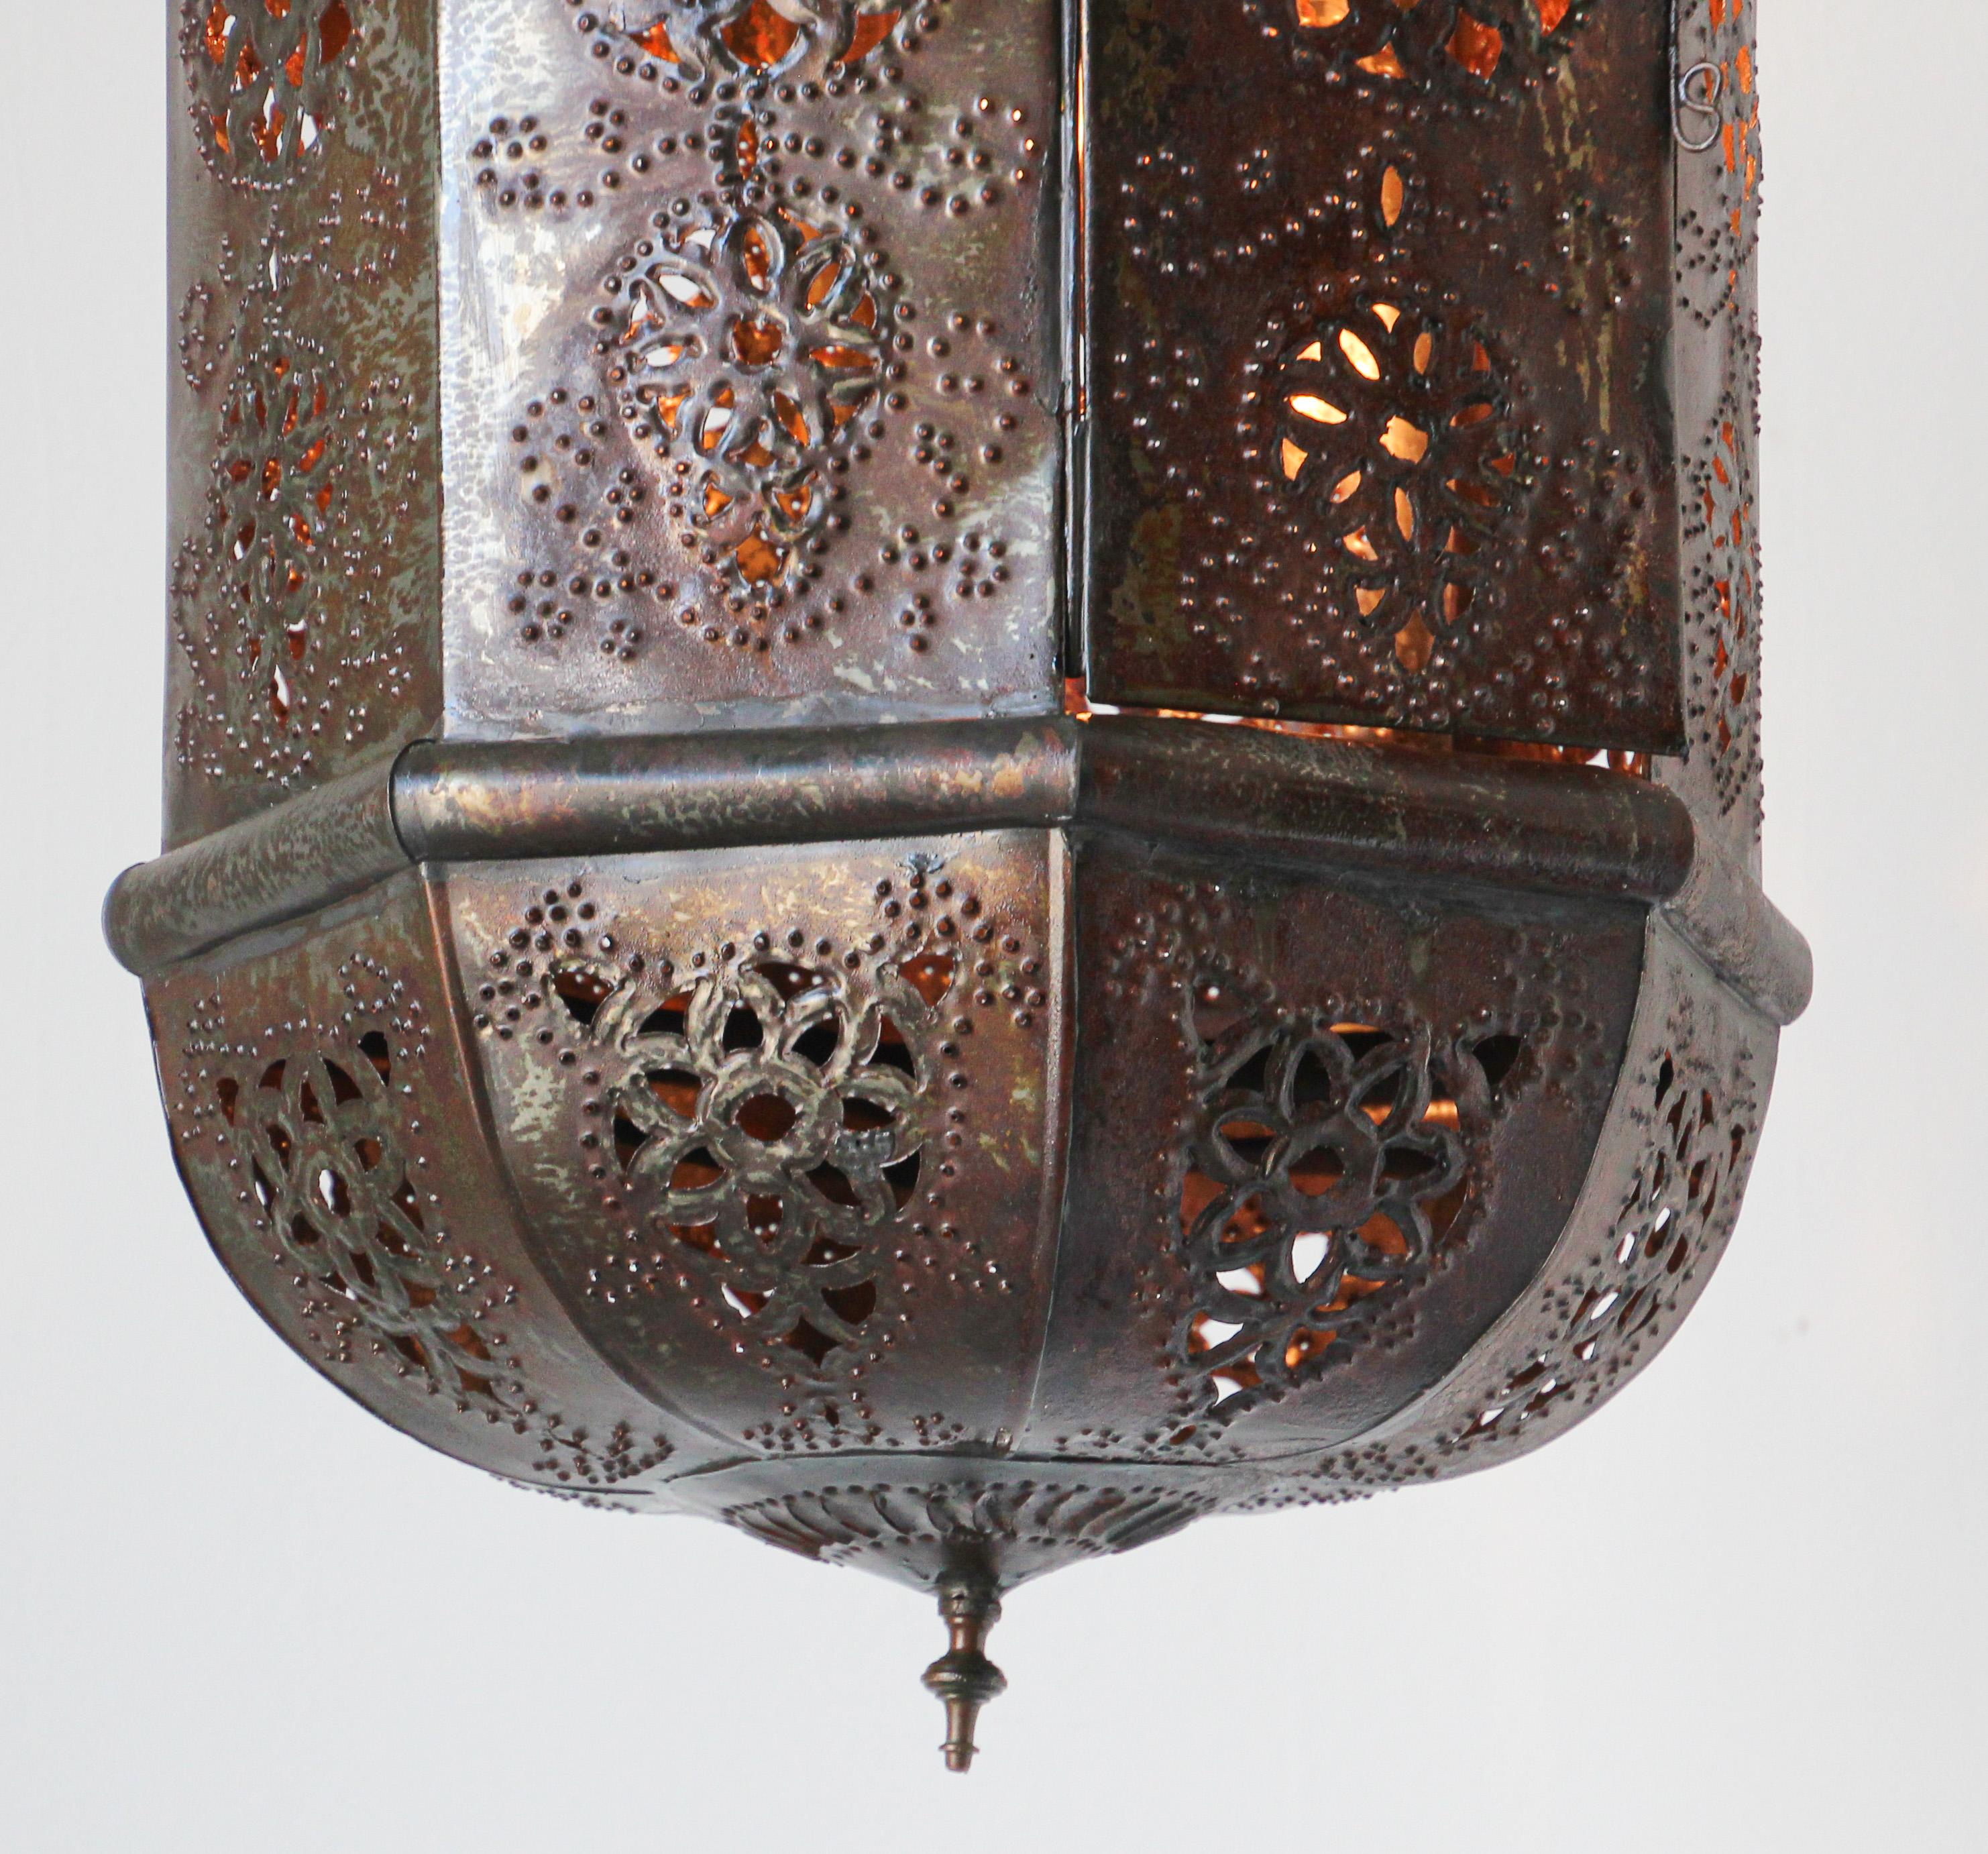 Lanterne marocaine en métal, fabriquée à la main.
Étonnant luminaire mauresque percé à la main de milliers de petits trous pour diffuser la lumière.
Fabriqué à la main en métal ouvert avec une patine rouille bronze foncé.
Lanterne en métal très